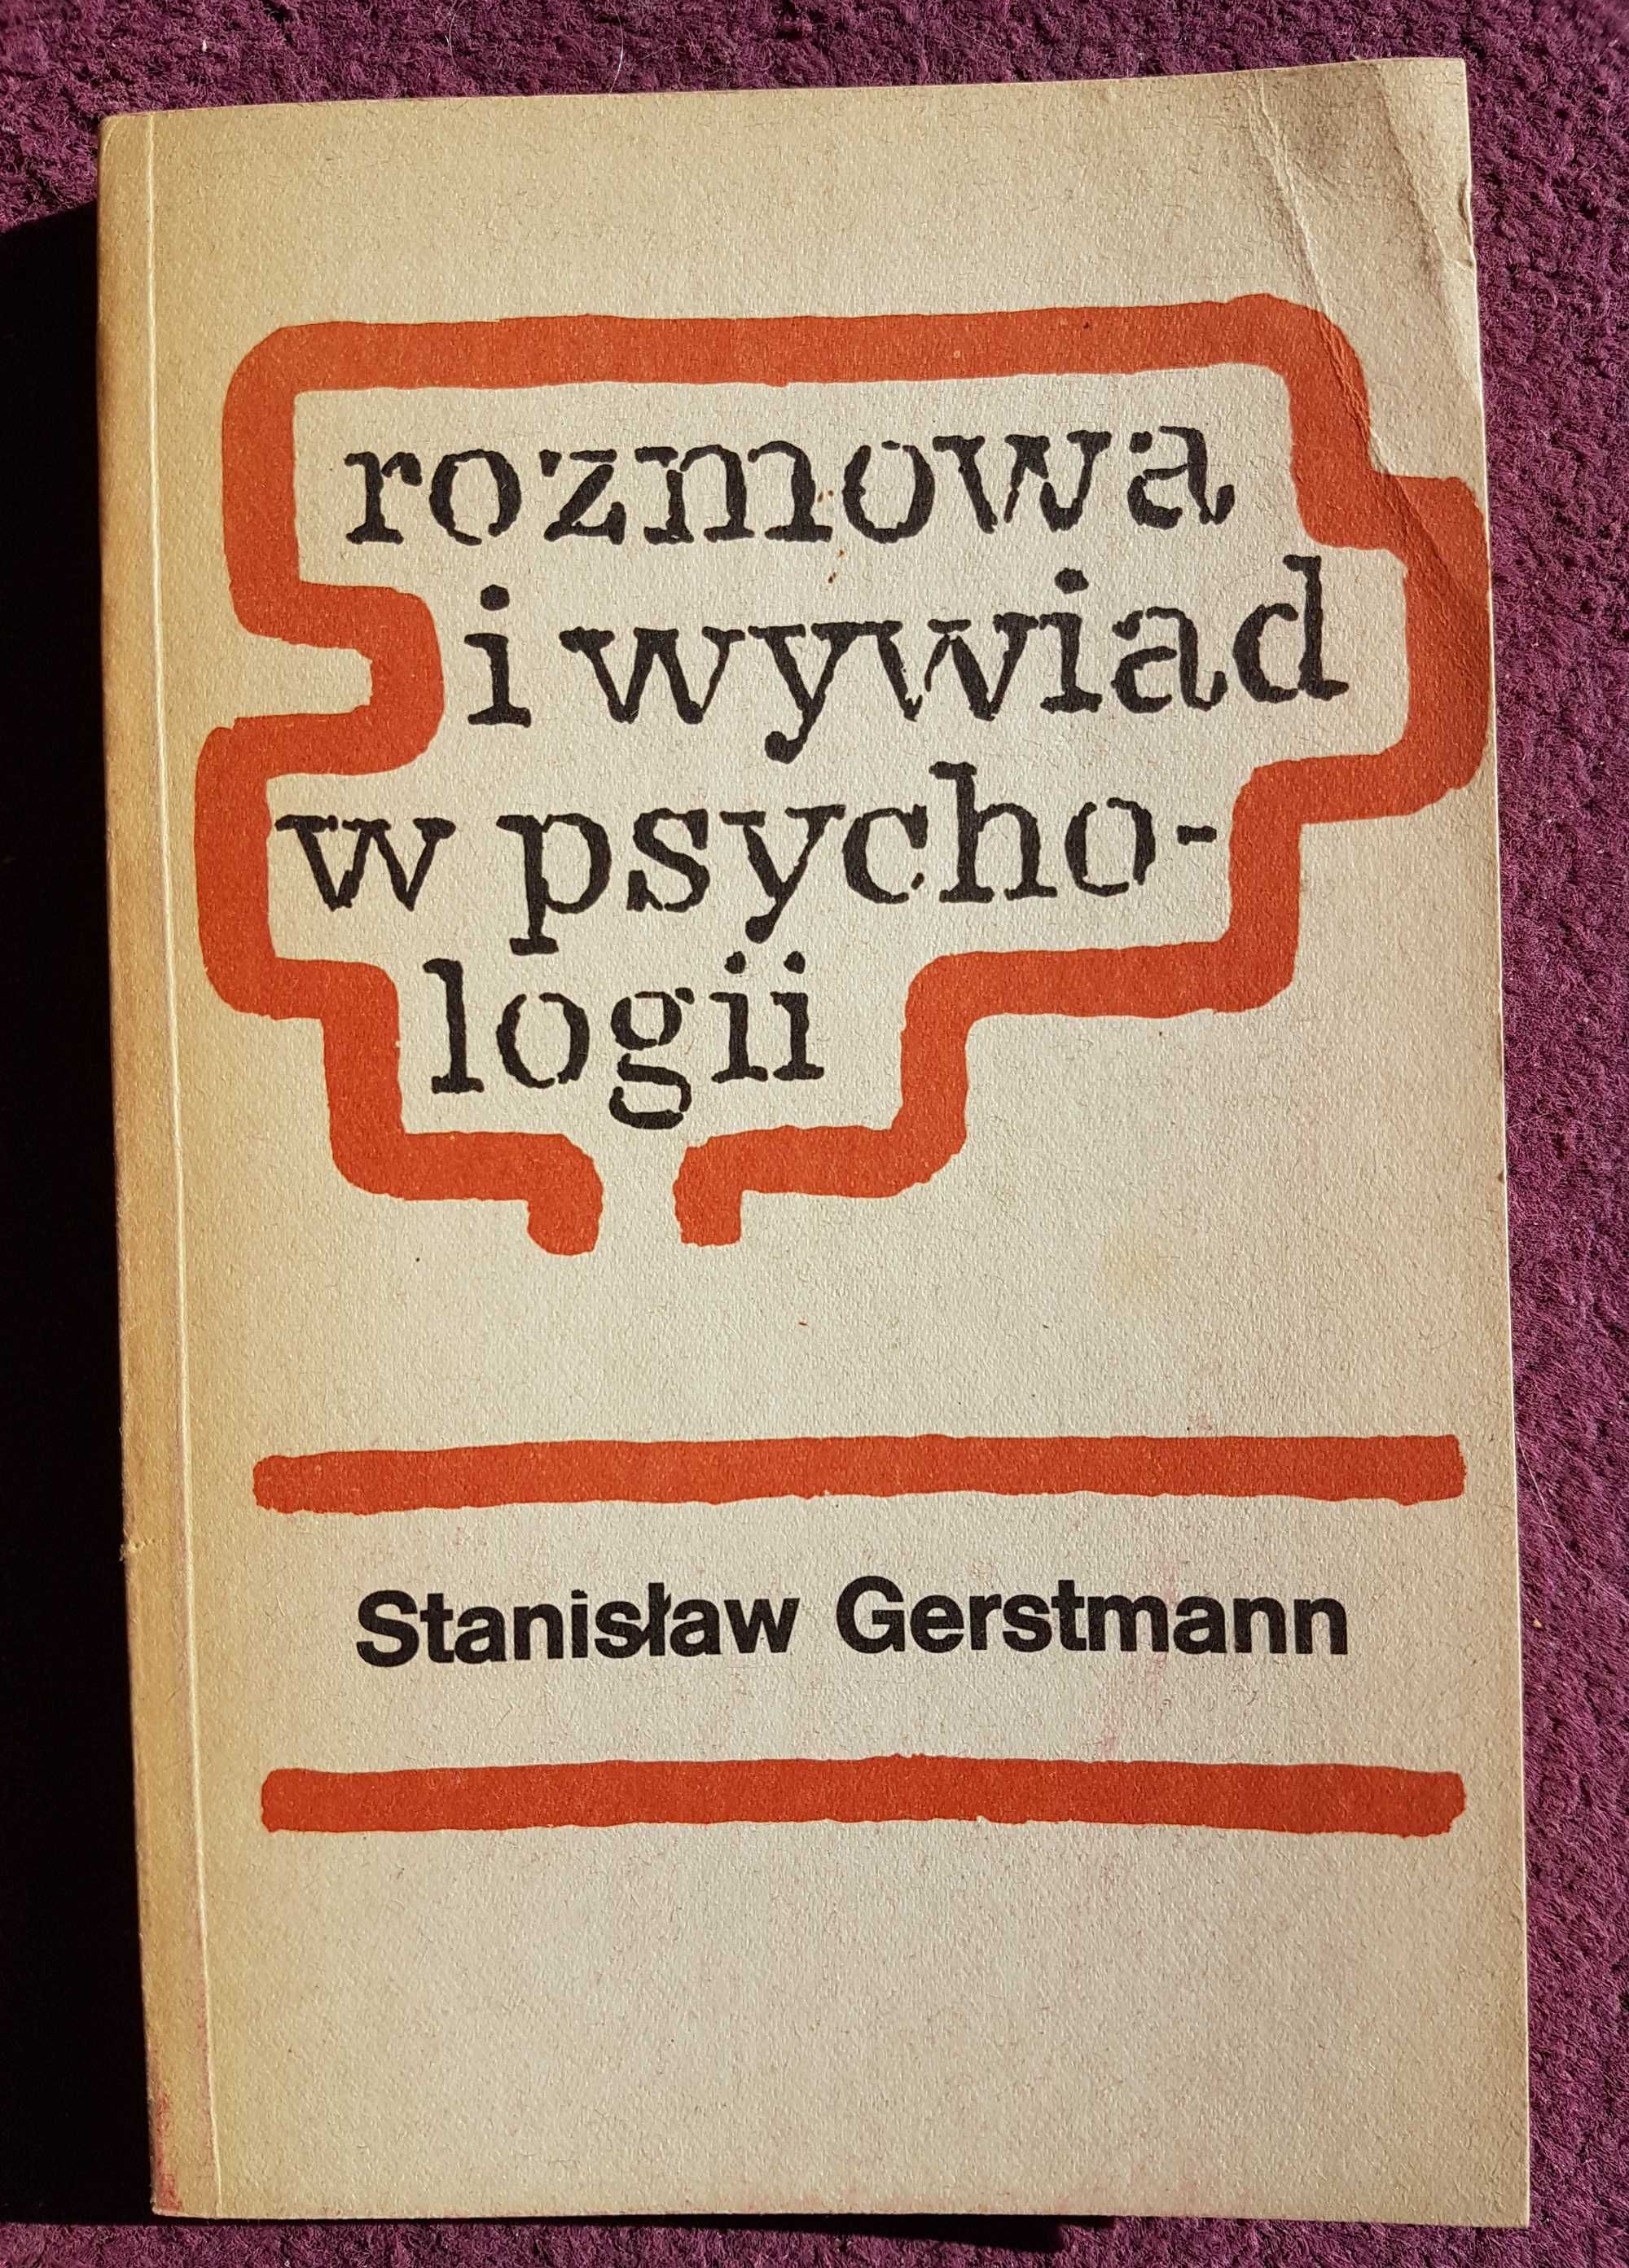 "Rozmowa i wywiad w psychologii" S. Gerstmann